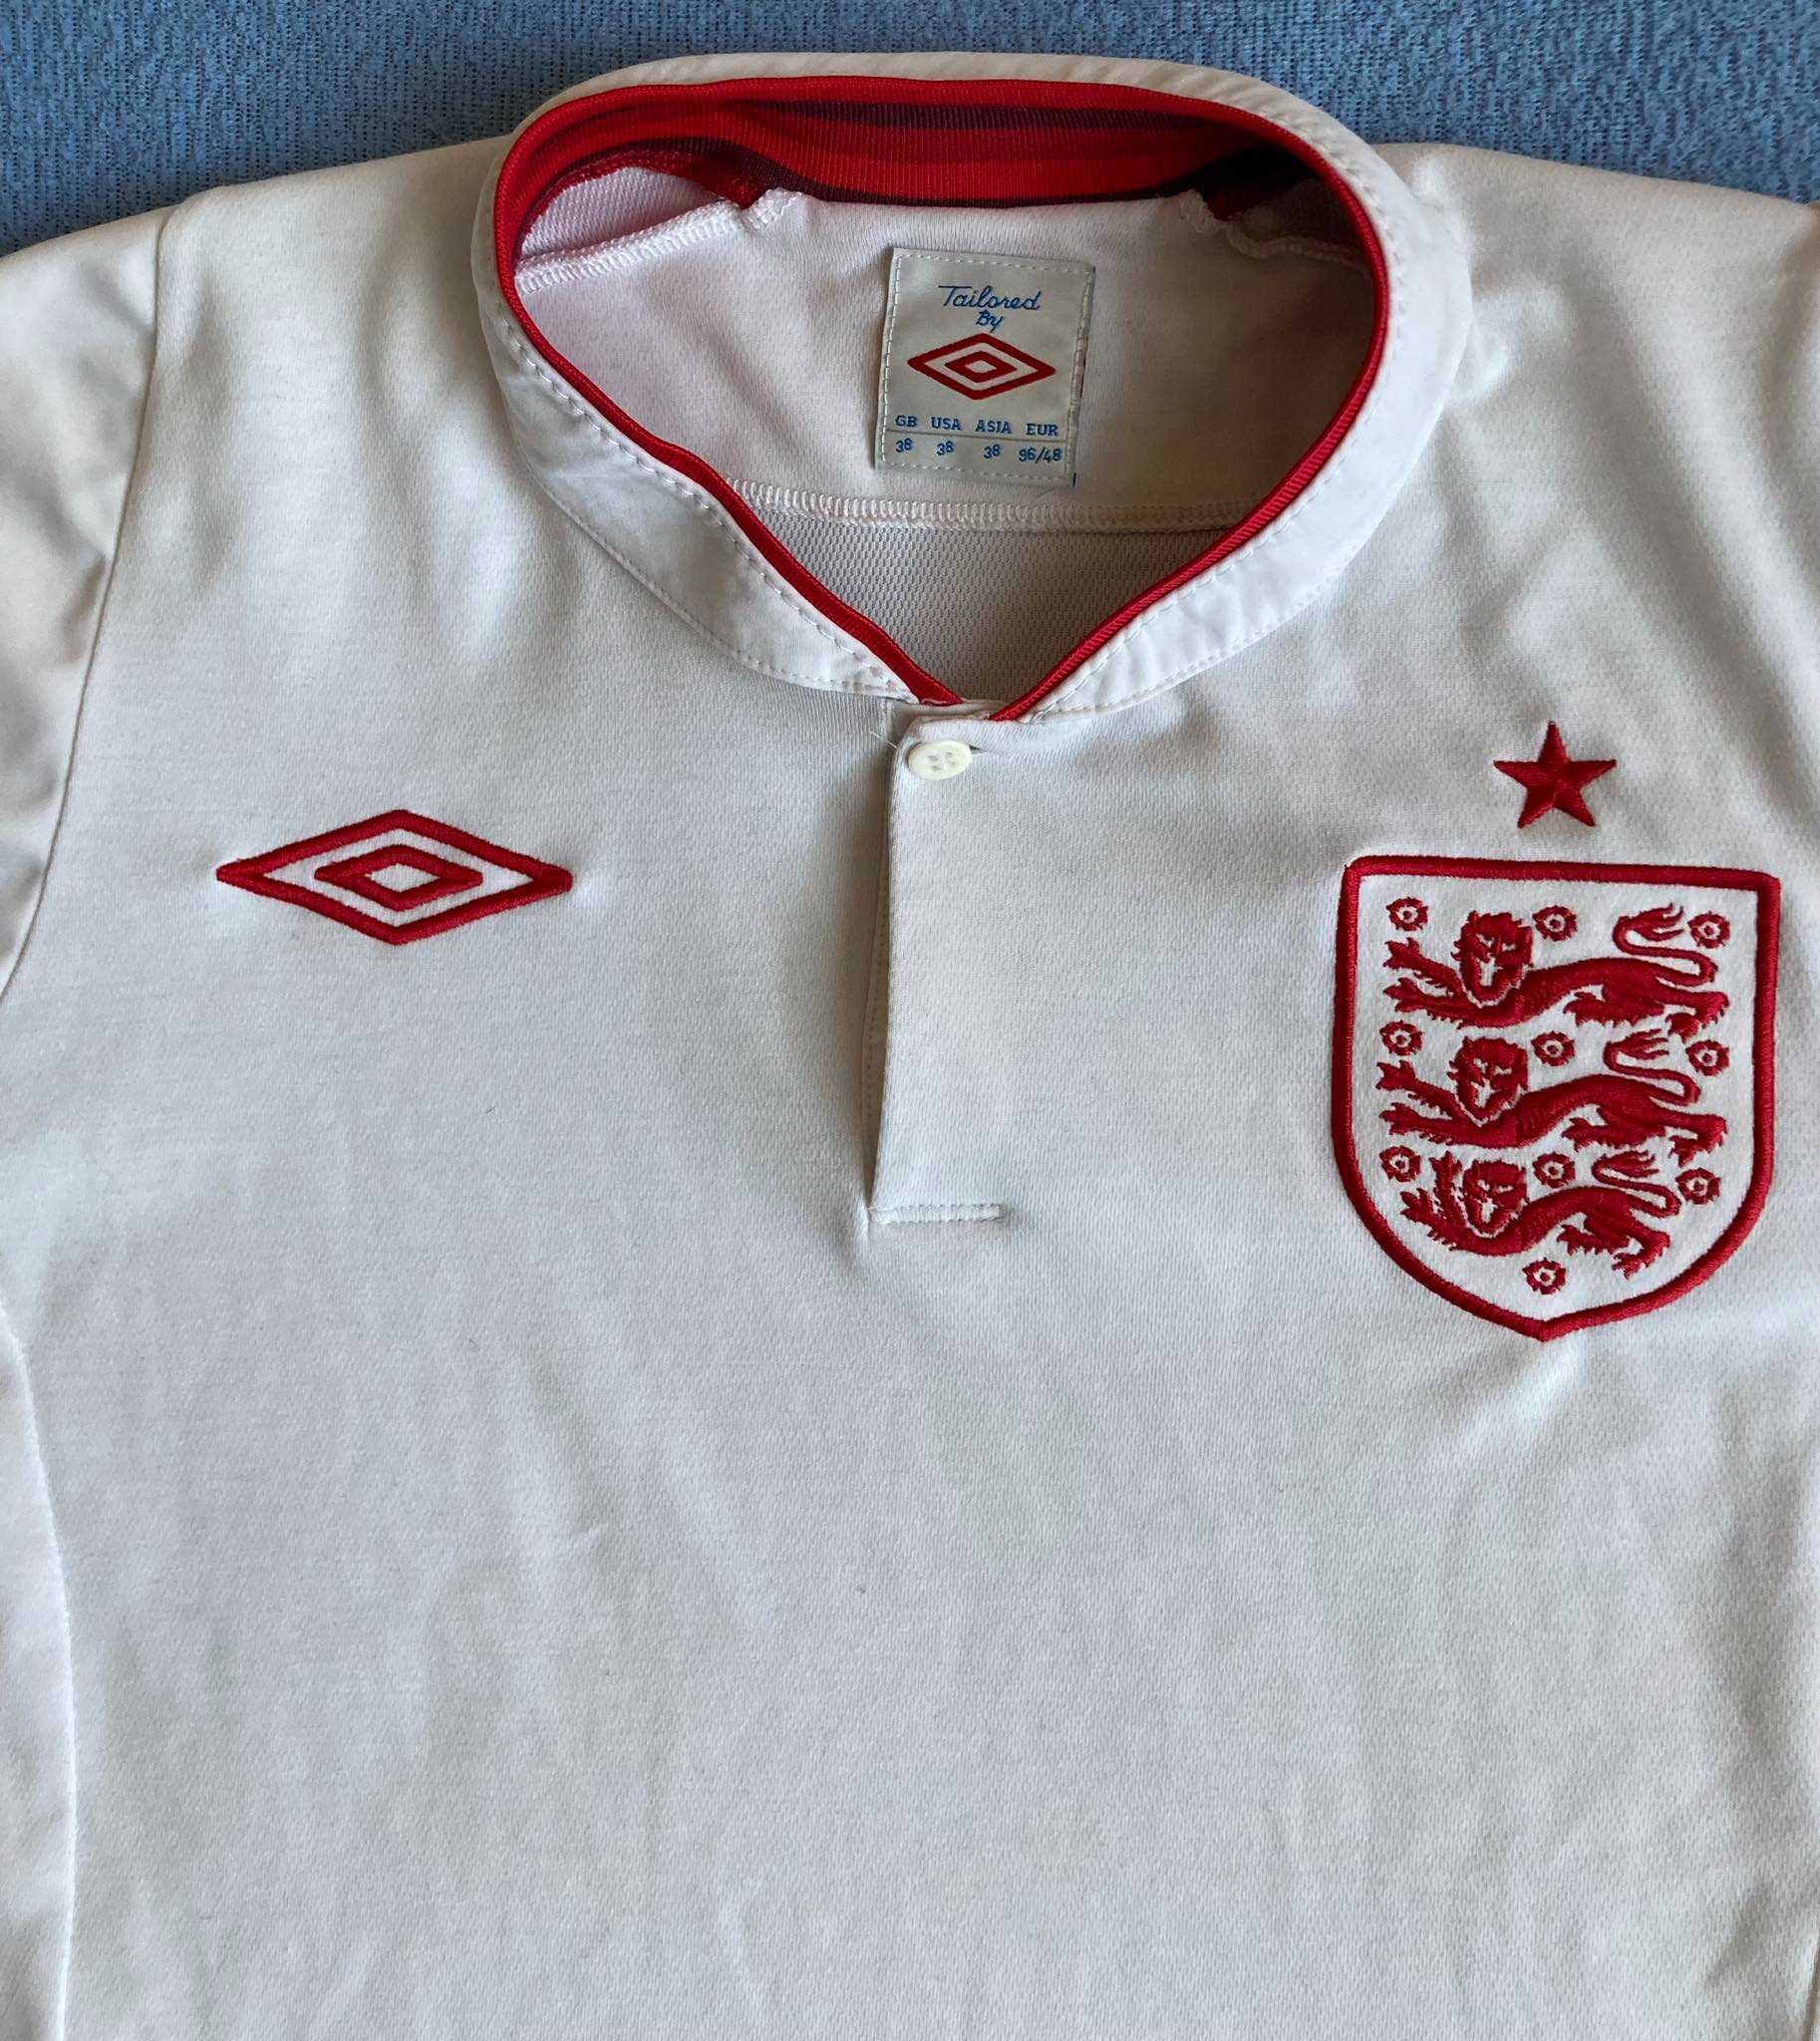 Koszulka Piłkarska Anglia Umbro Roz. M